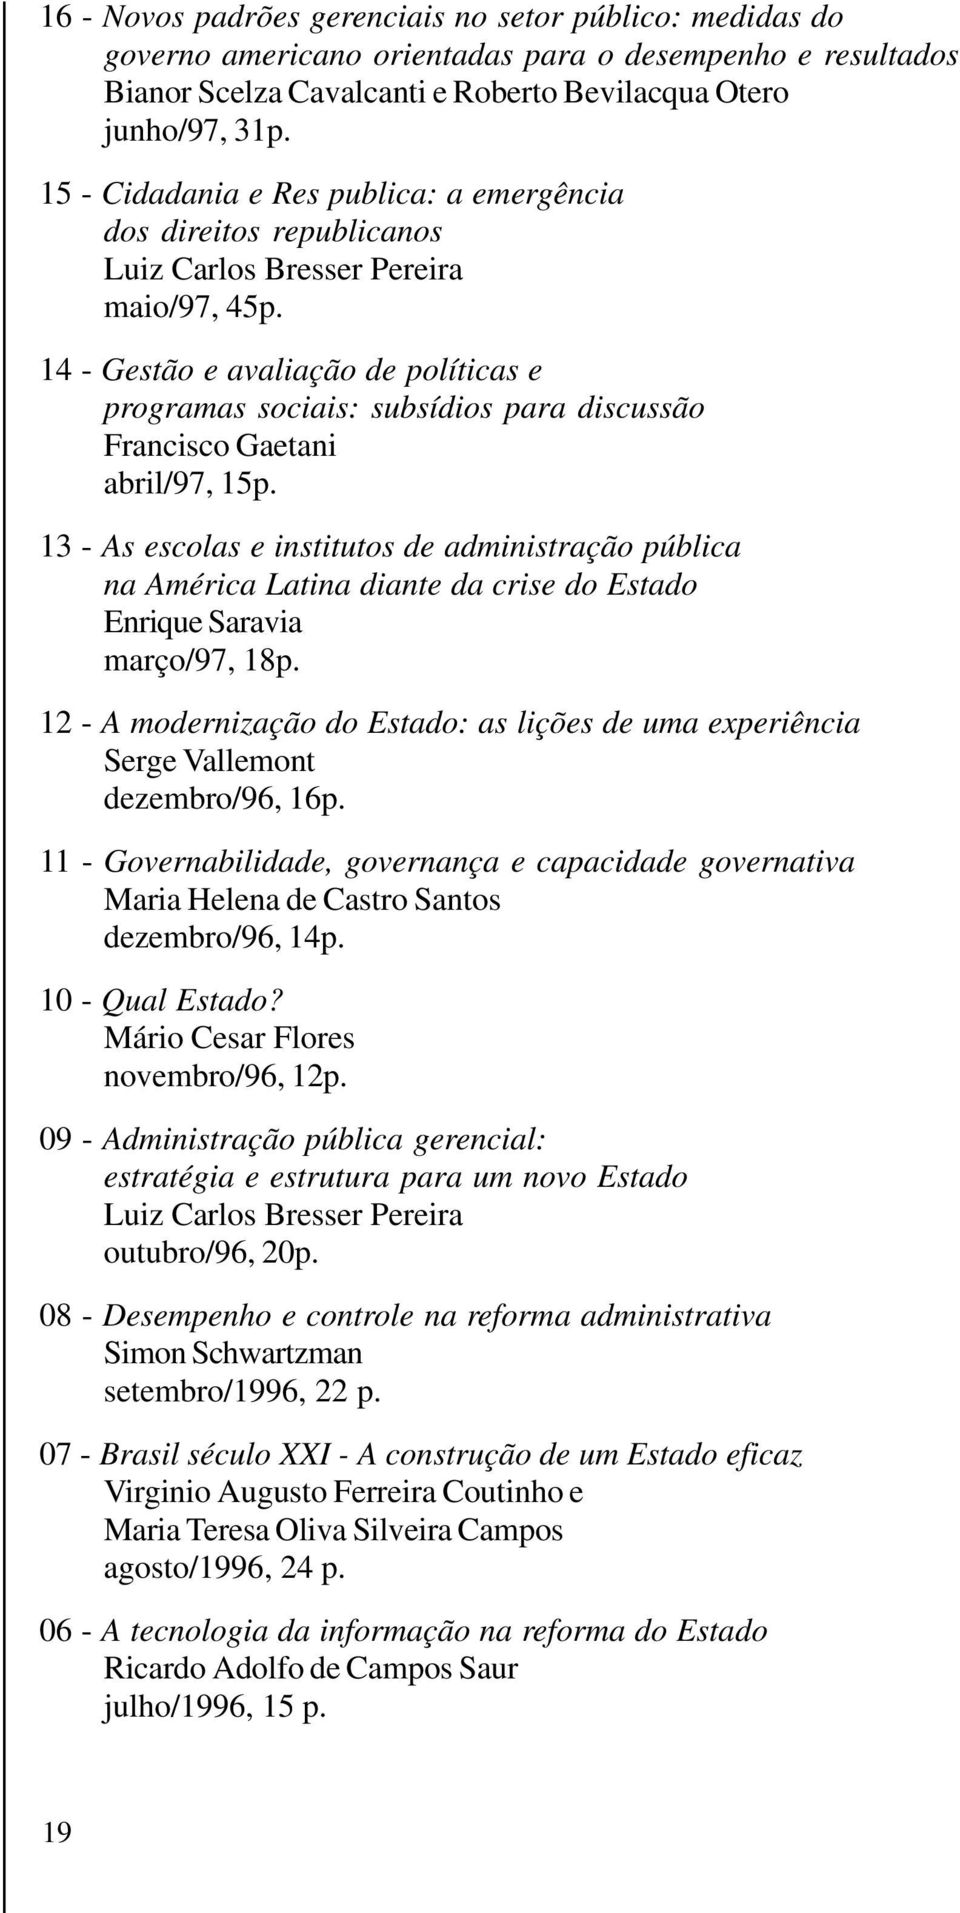 14 - Gestão e avaliação de políticas e programas sociais: subsídios para discussão Francisco Gaetani abril/97, 15p.